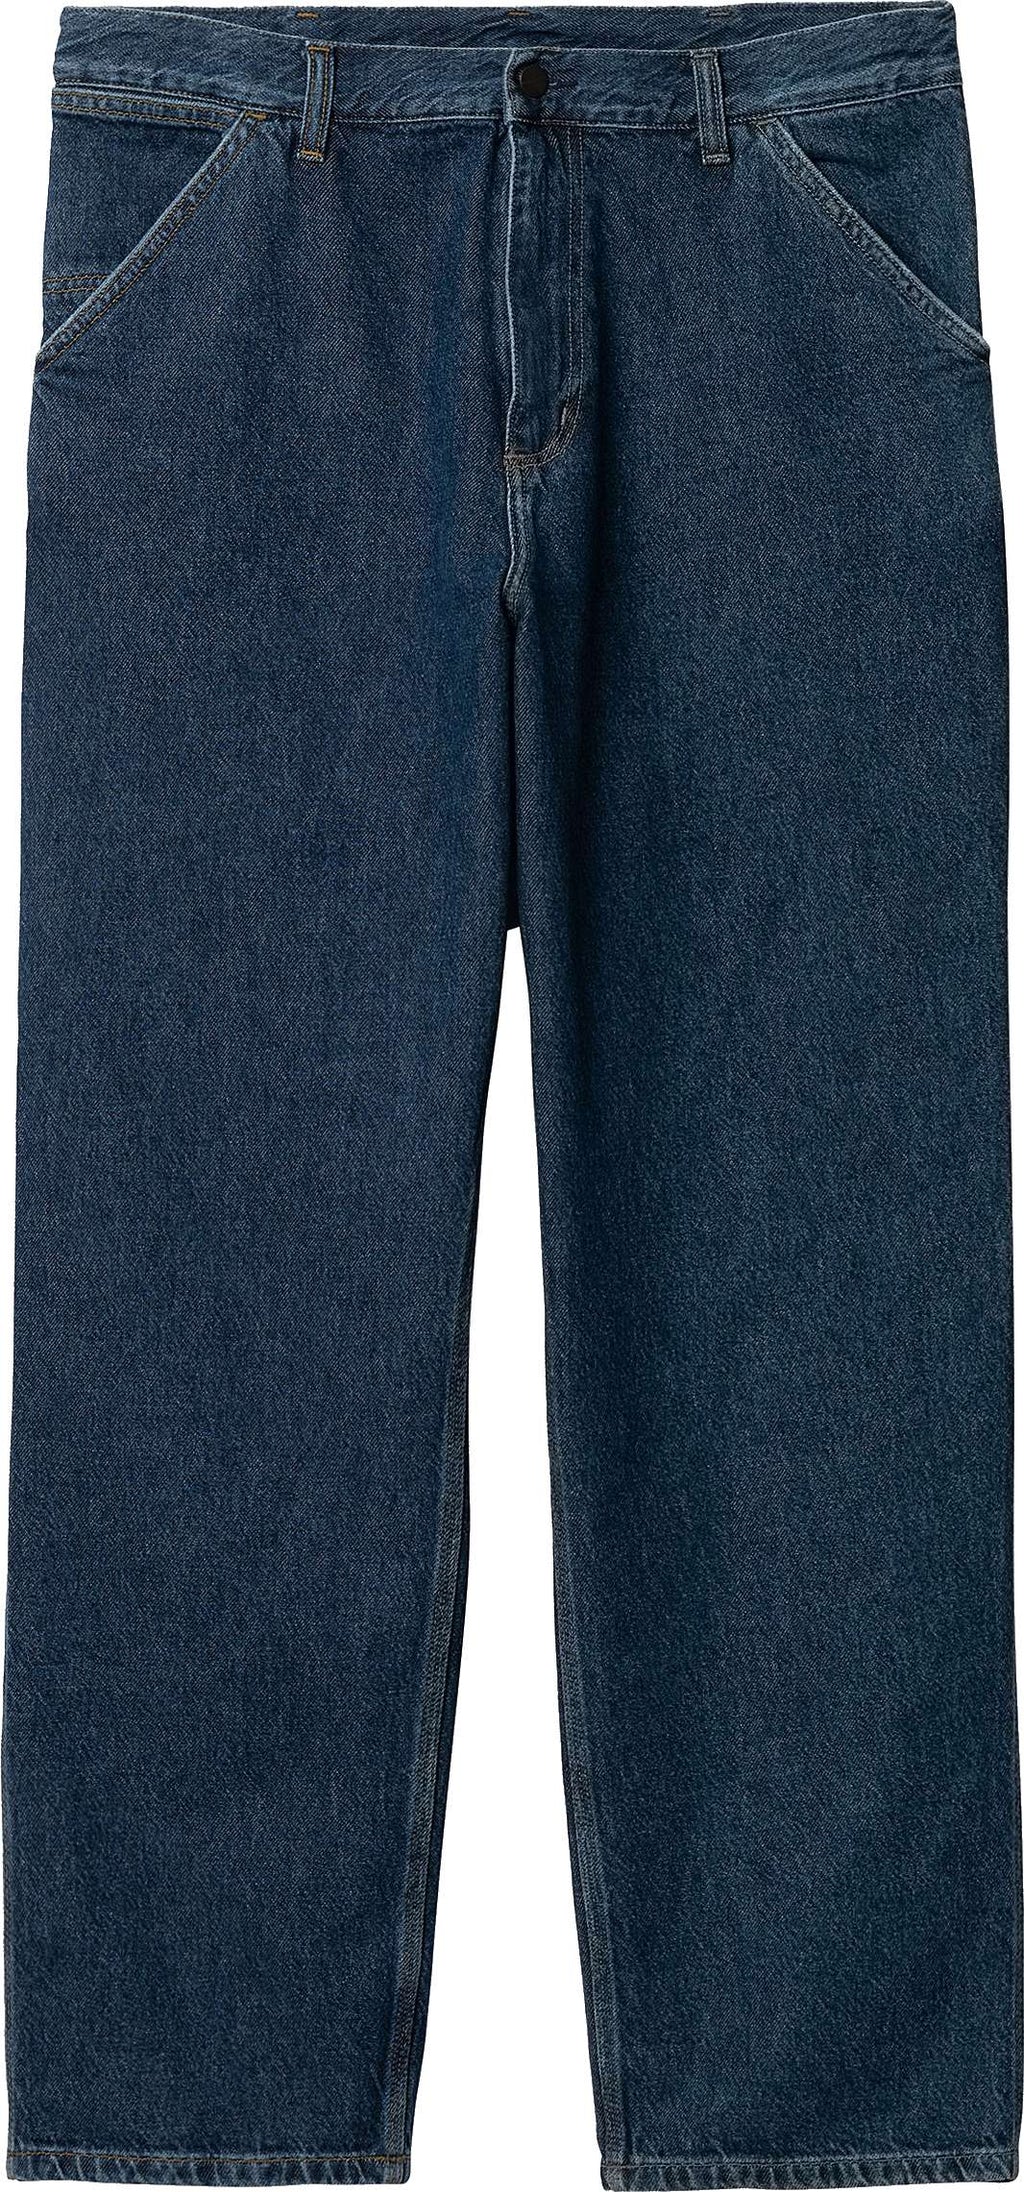  Carhartt Wip Pantaloni Single Knee Pant Blue Stone Washed Uomo - 2